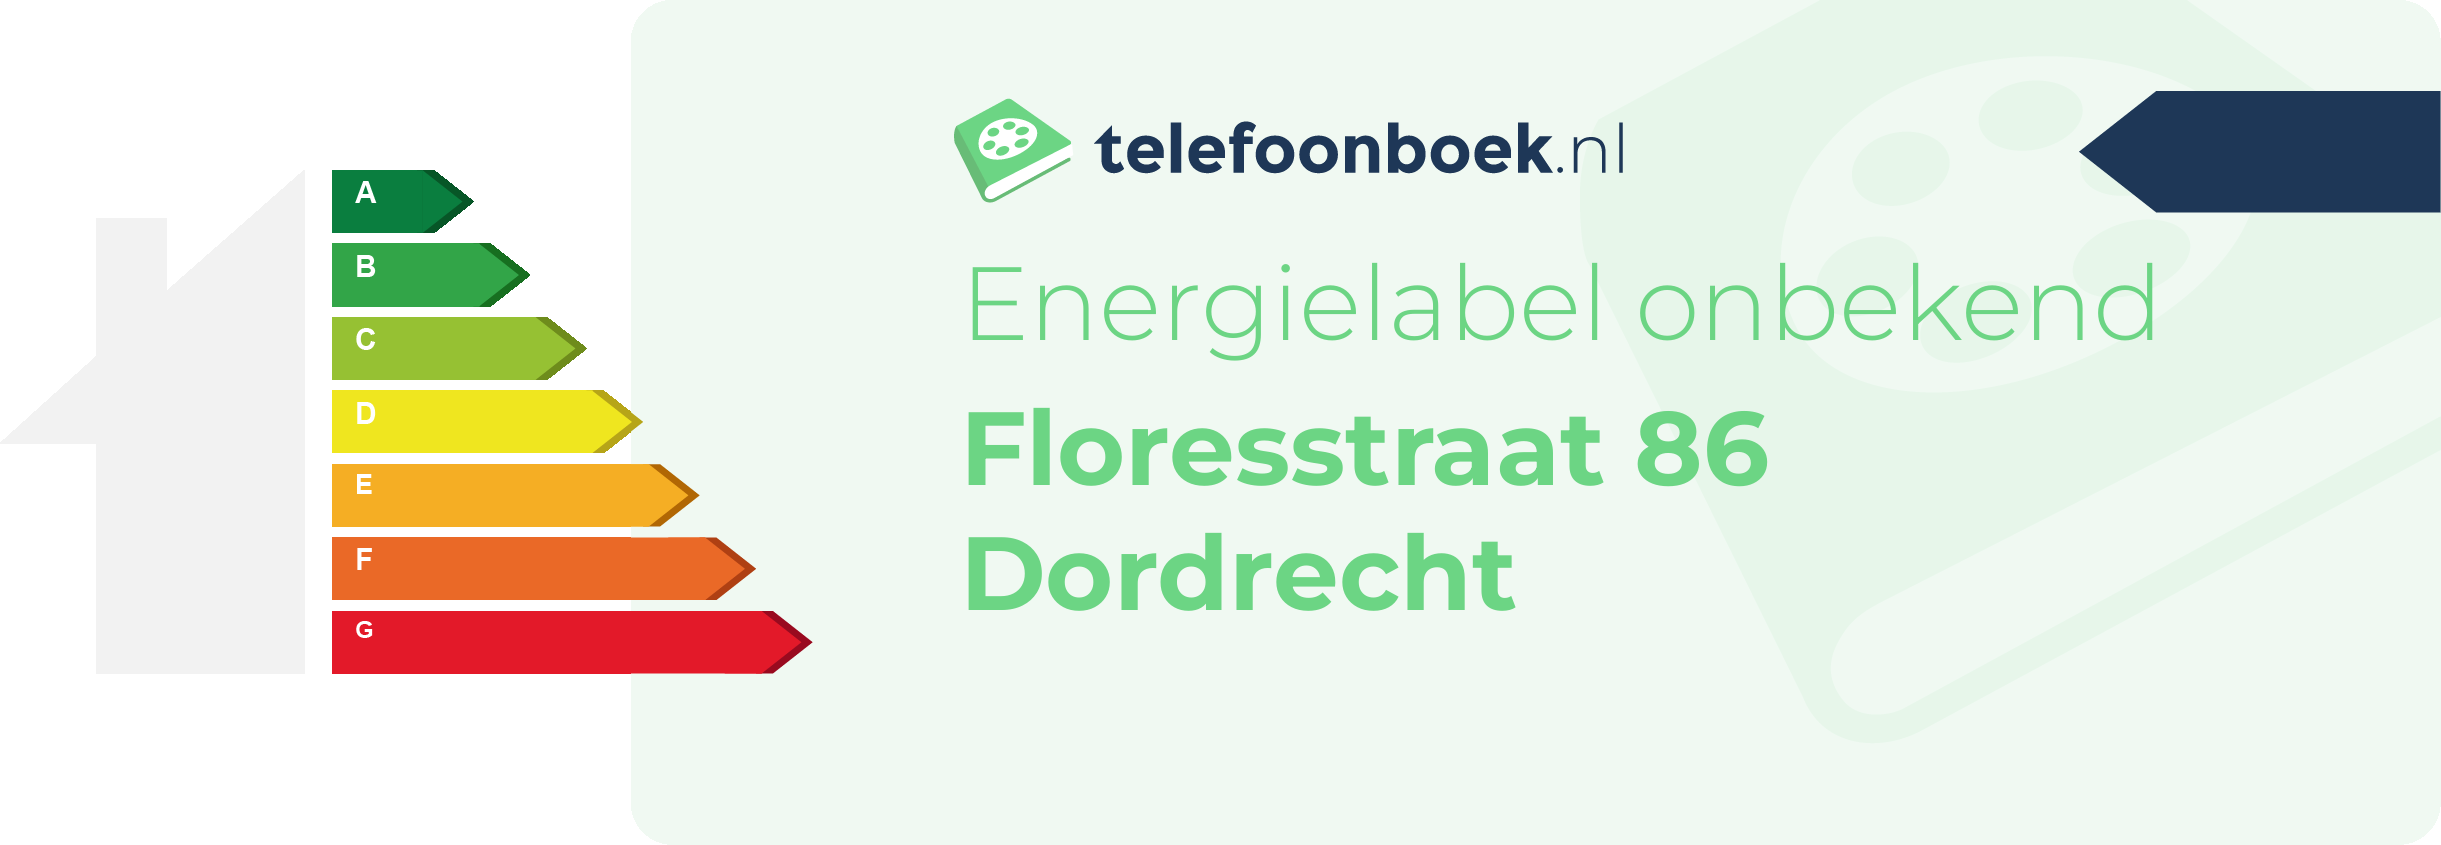 Energielabel Floresstraat 86 Dordrecht